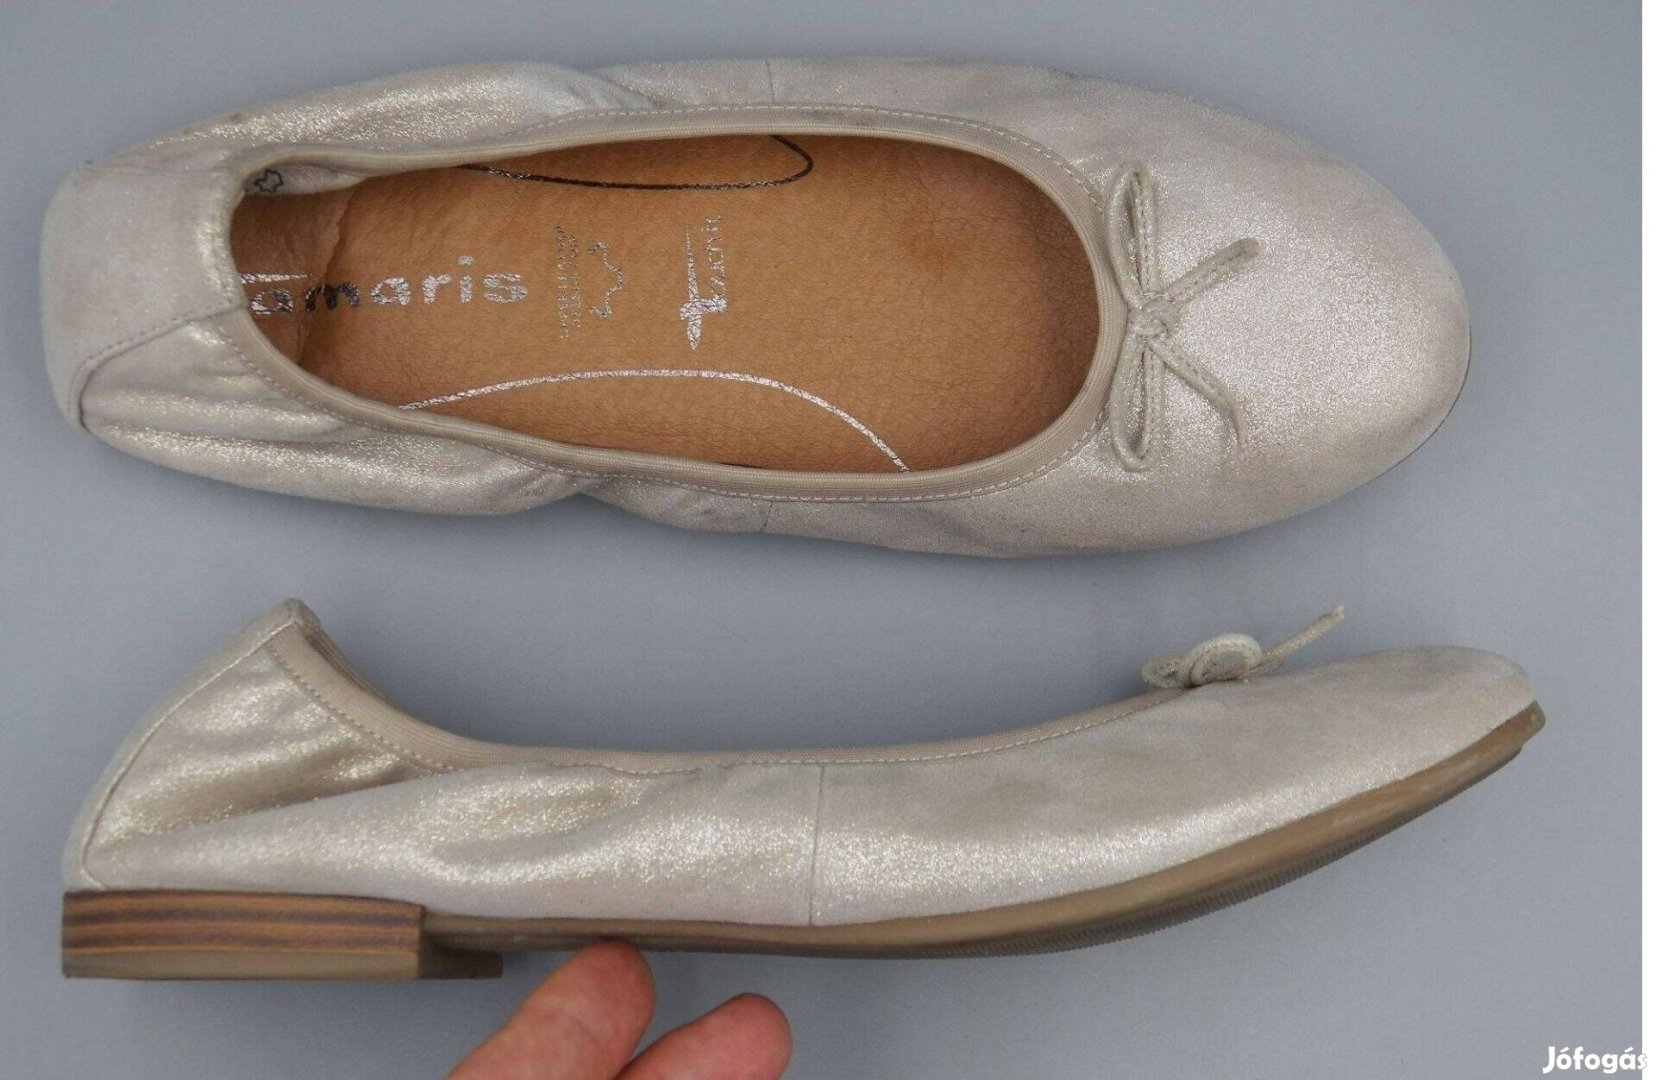 Tamaris puha bőr balerina cipő, 38 -as